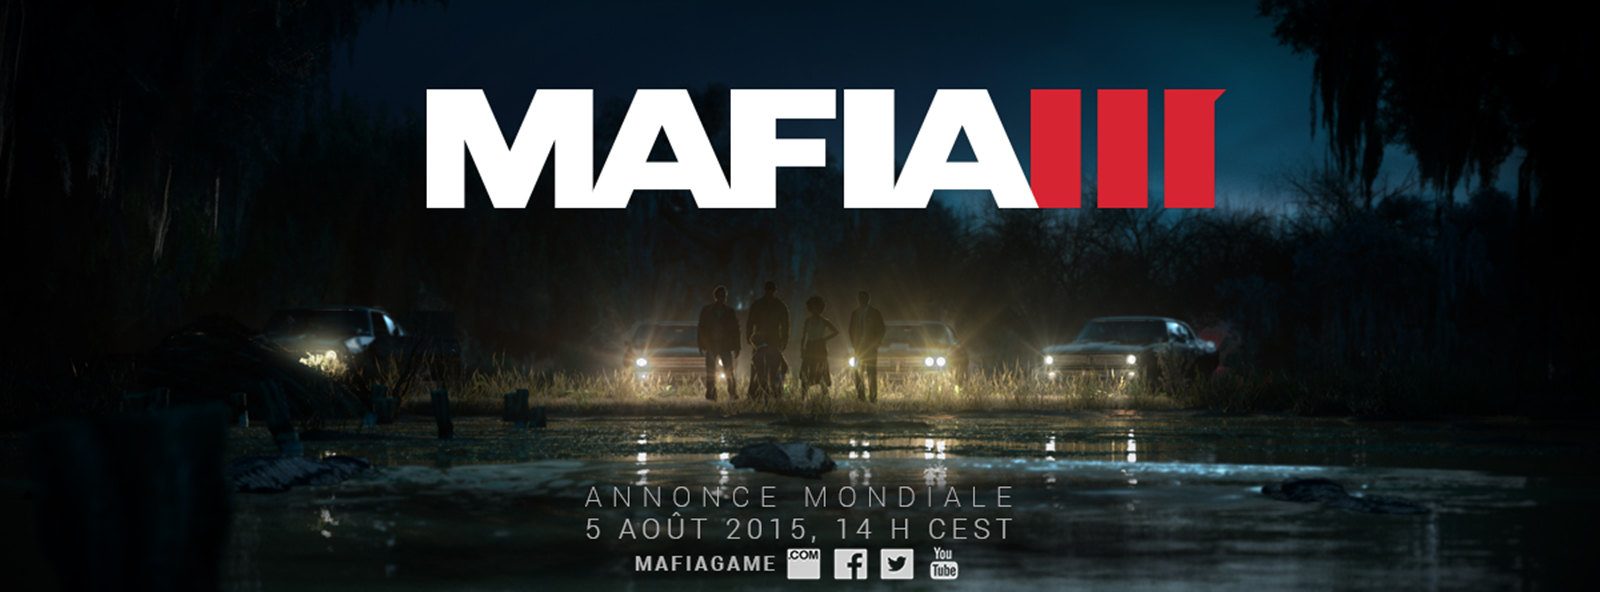 mafia 3 reveal